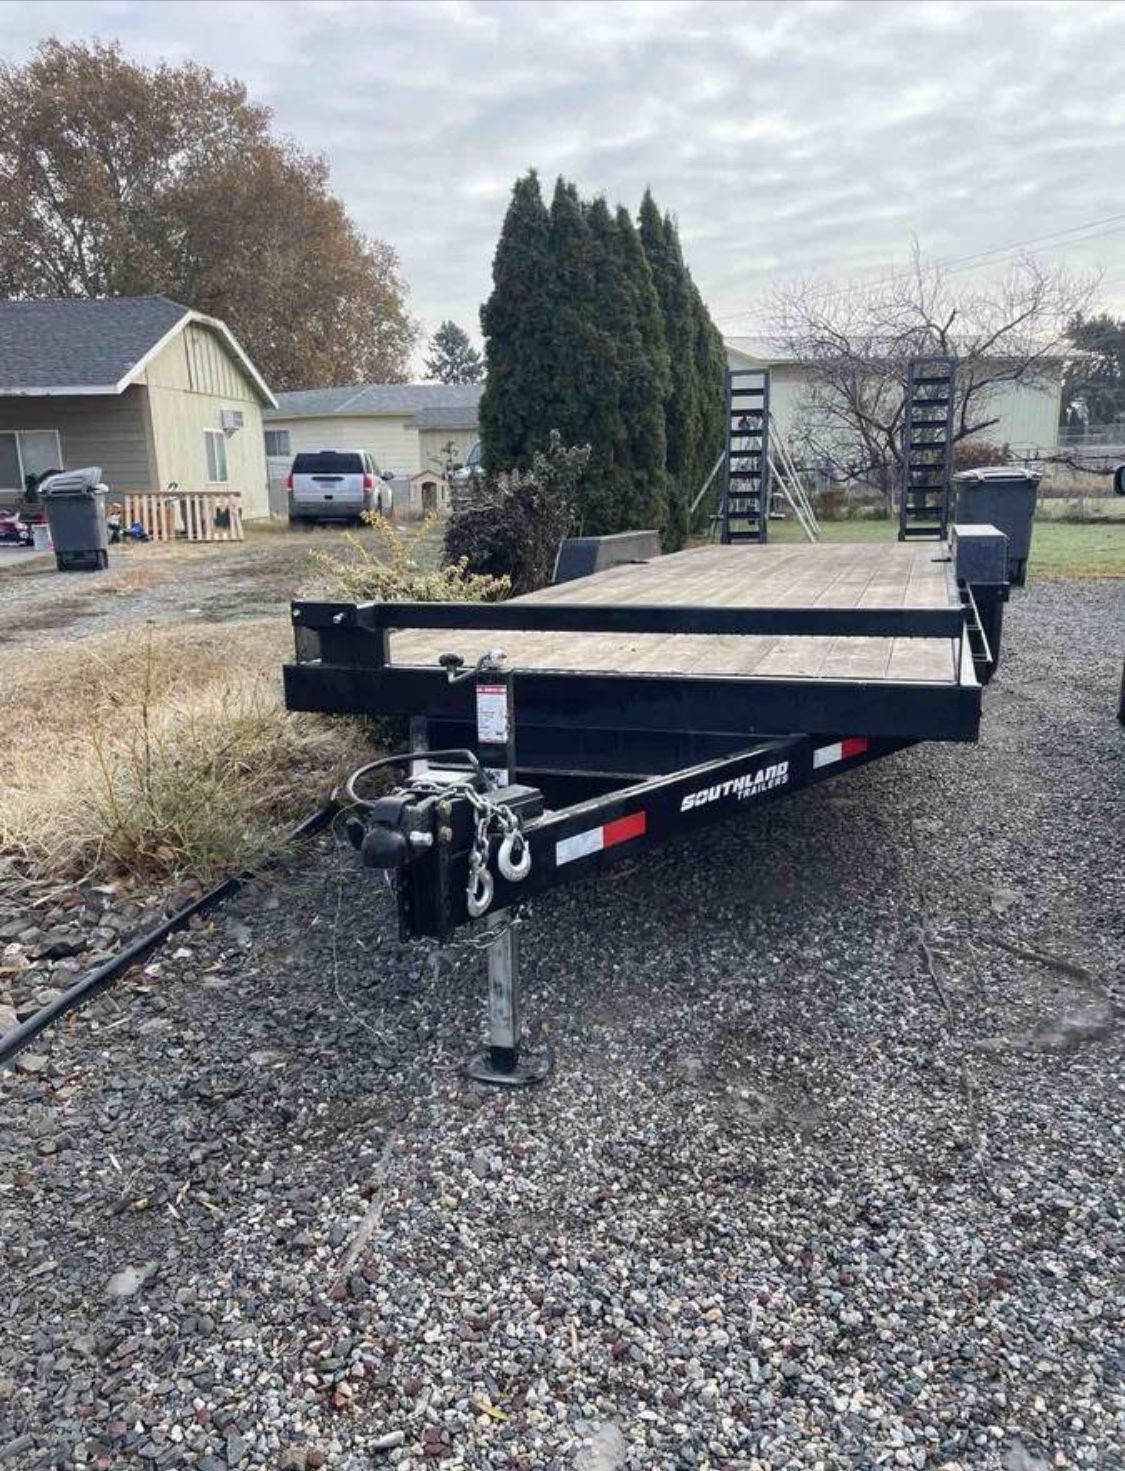 Southland Flatbed/Car hauler trailer